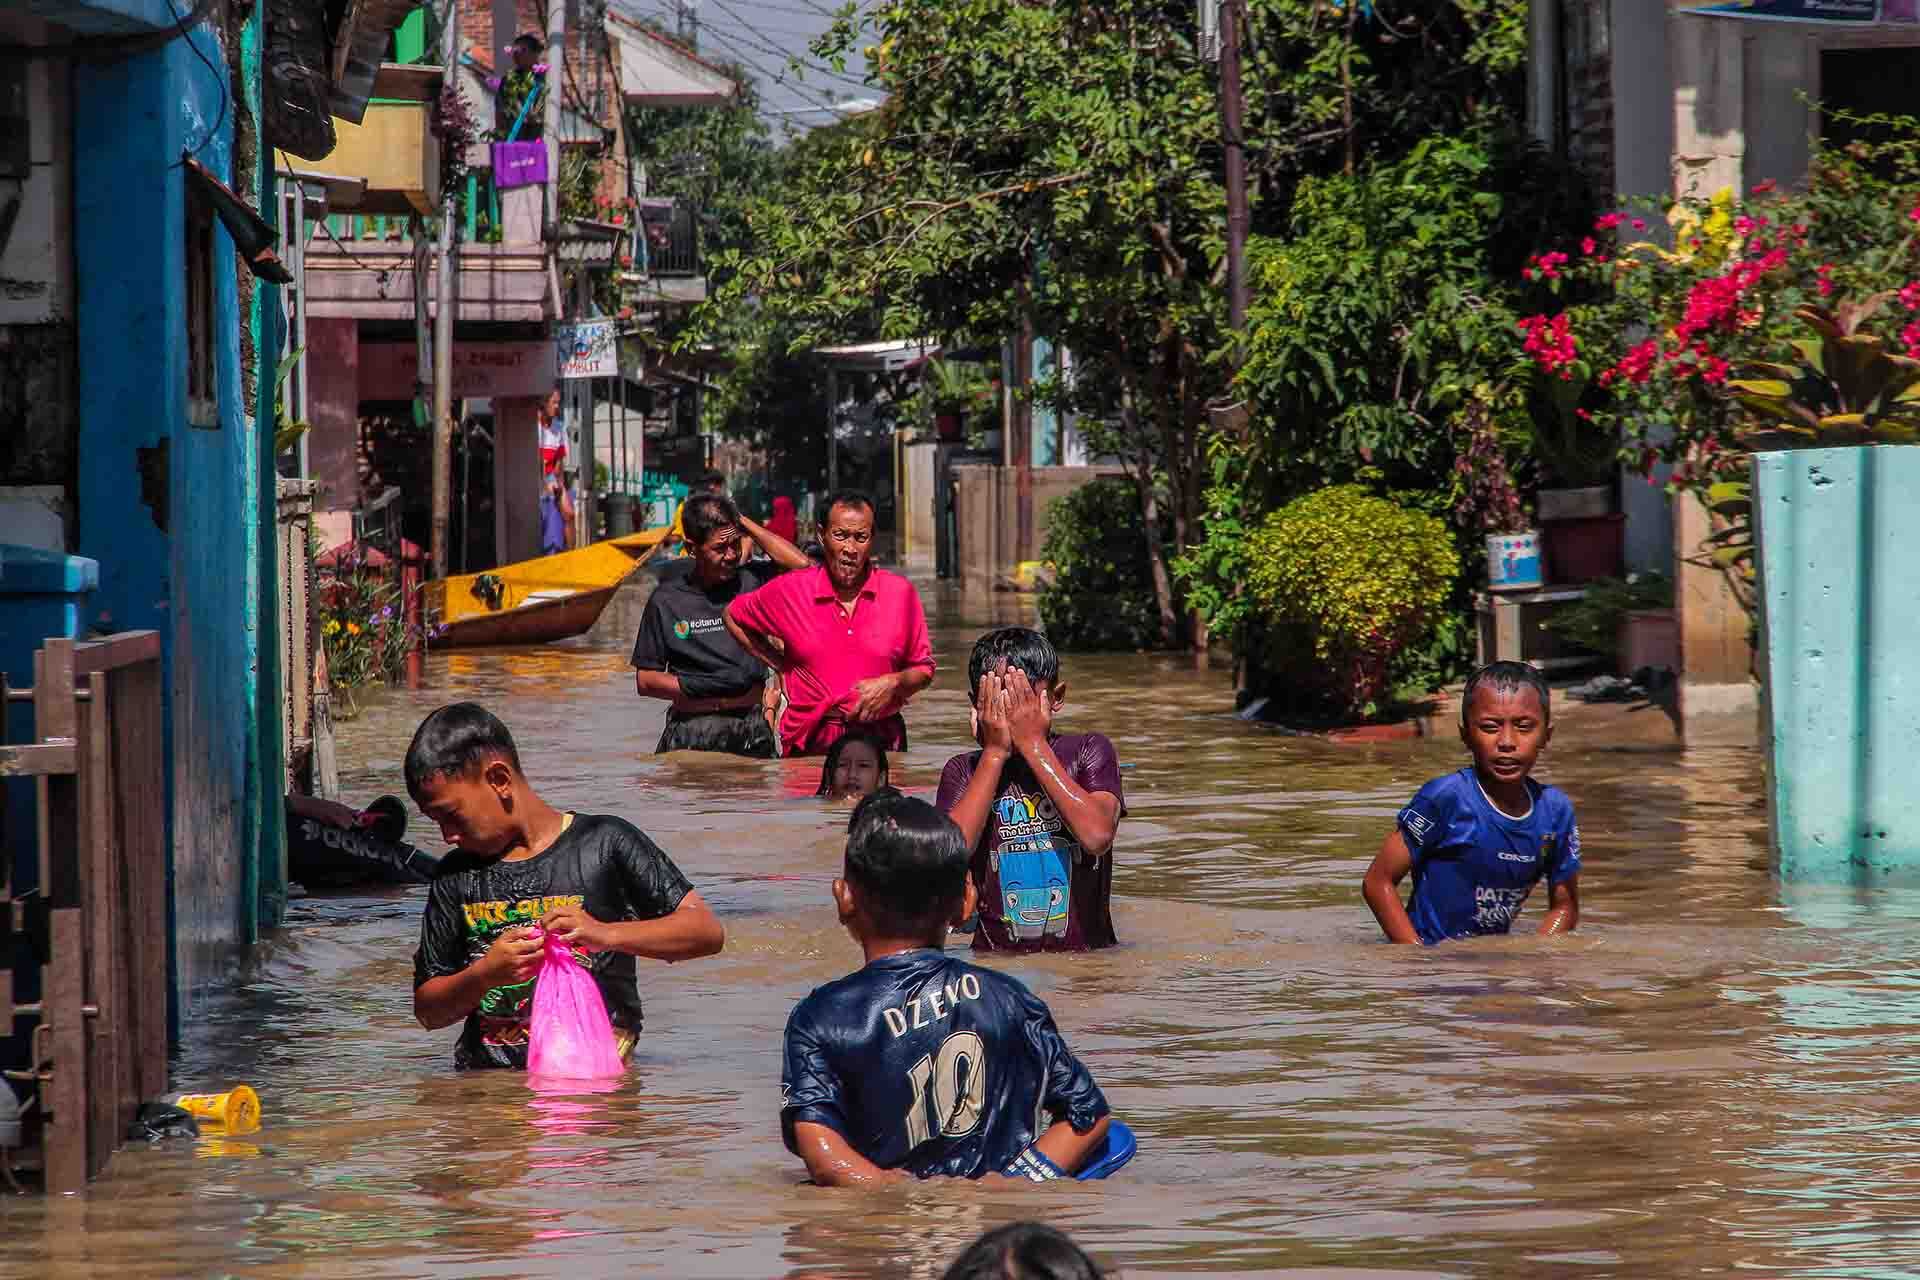 Le alluvioni in Indonesia a novembre - foto di Algi Febri Sugita / SOPA Images/Sipa USA/REUTERS